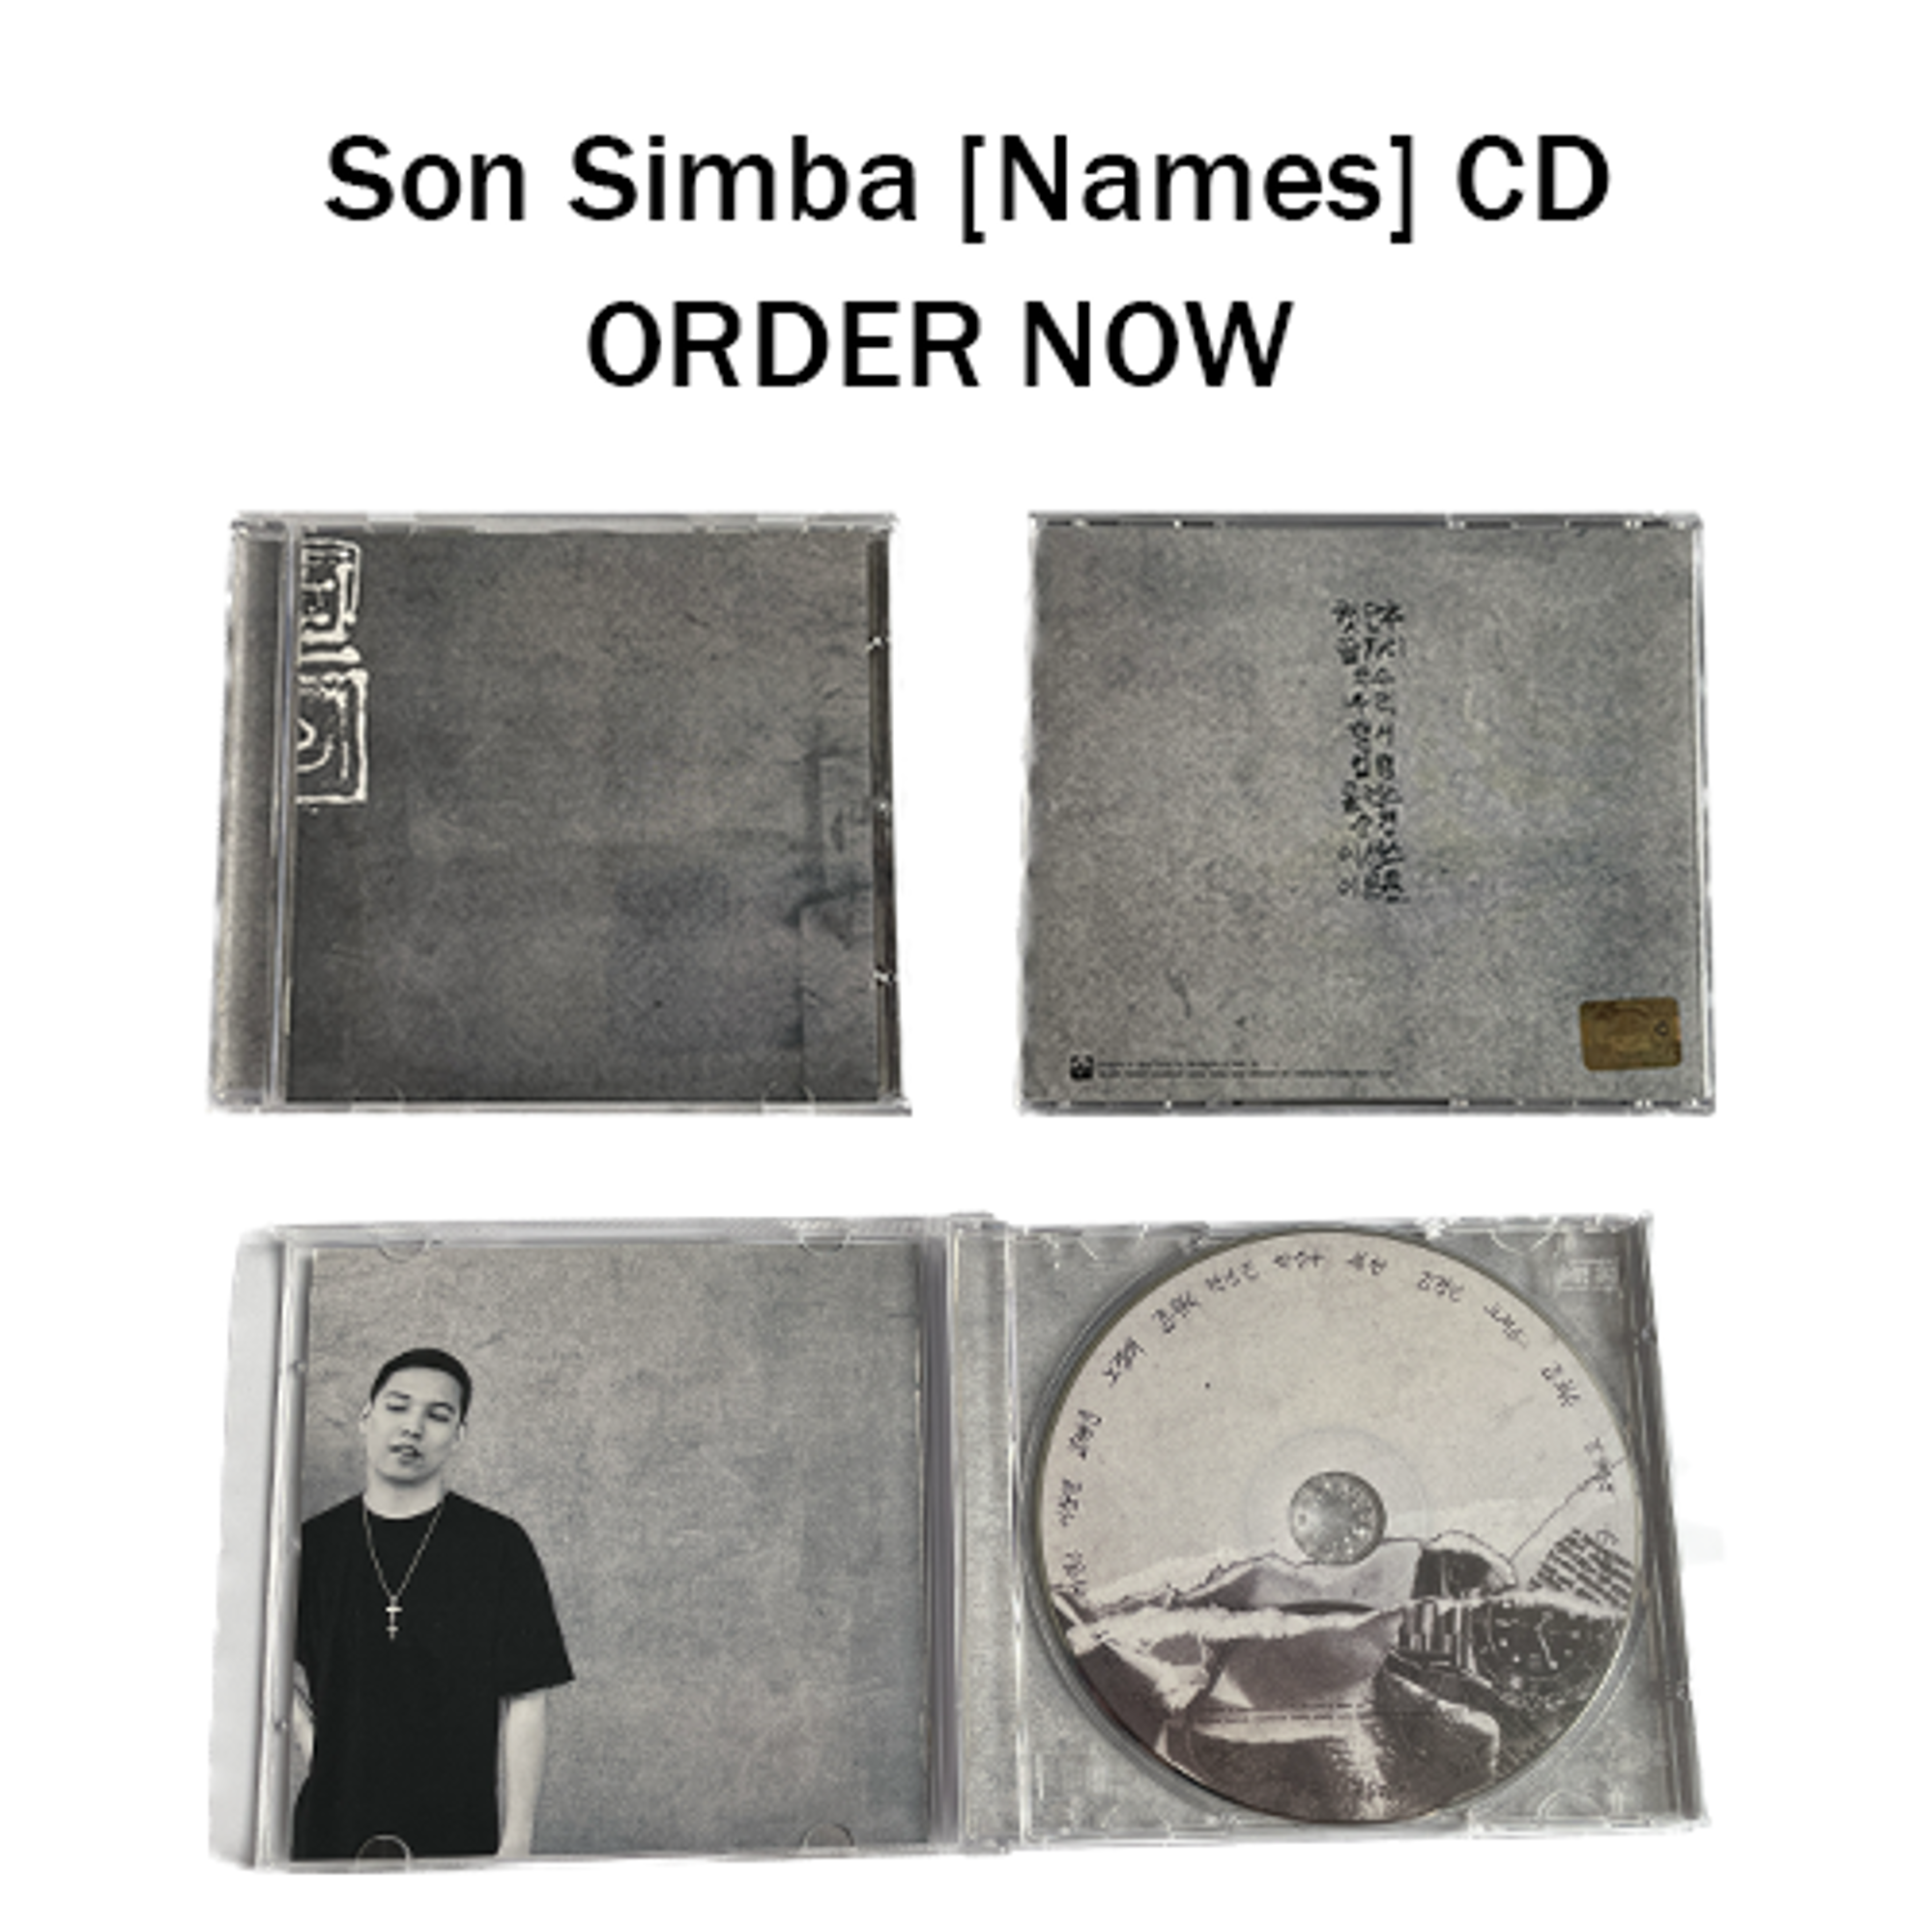 Son Simba [Names] CD